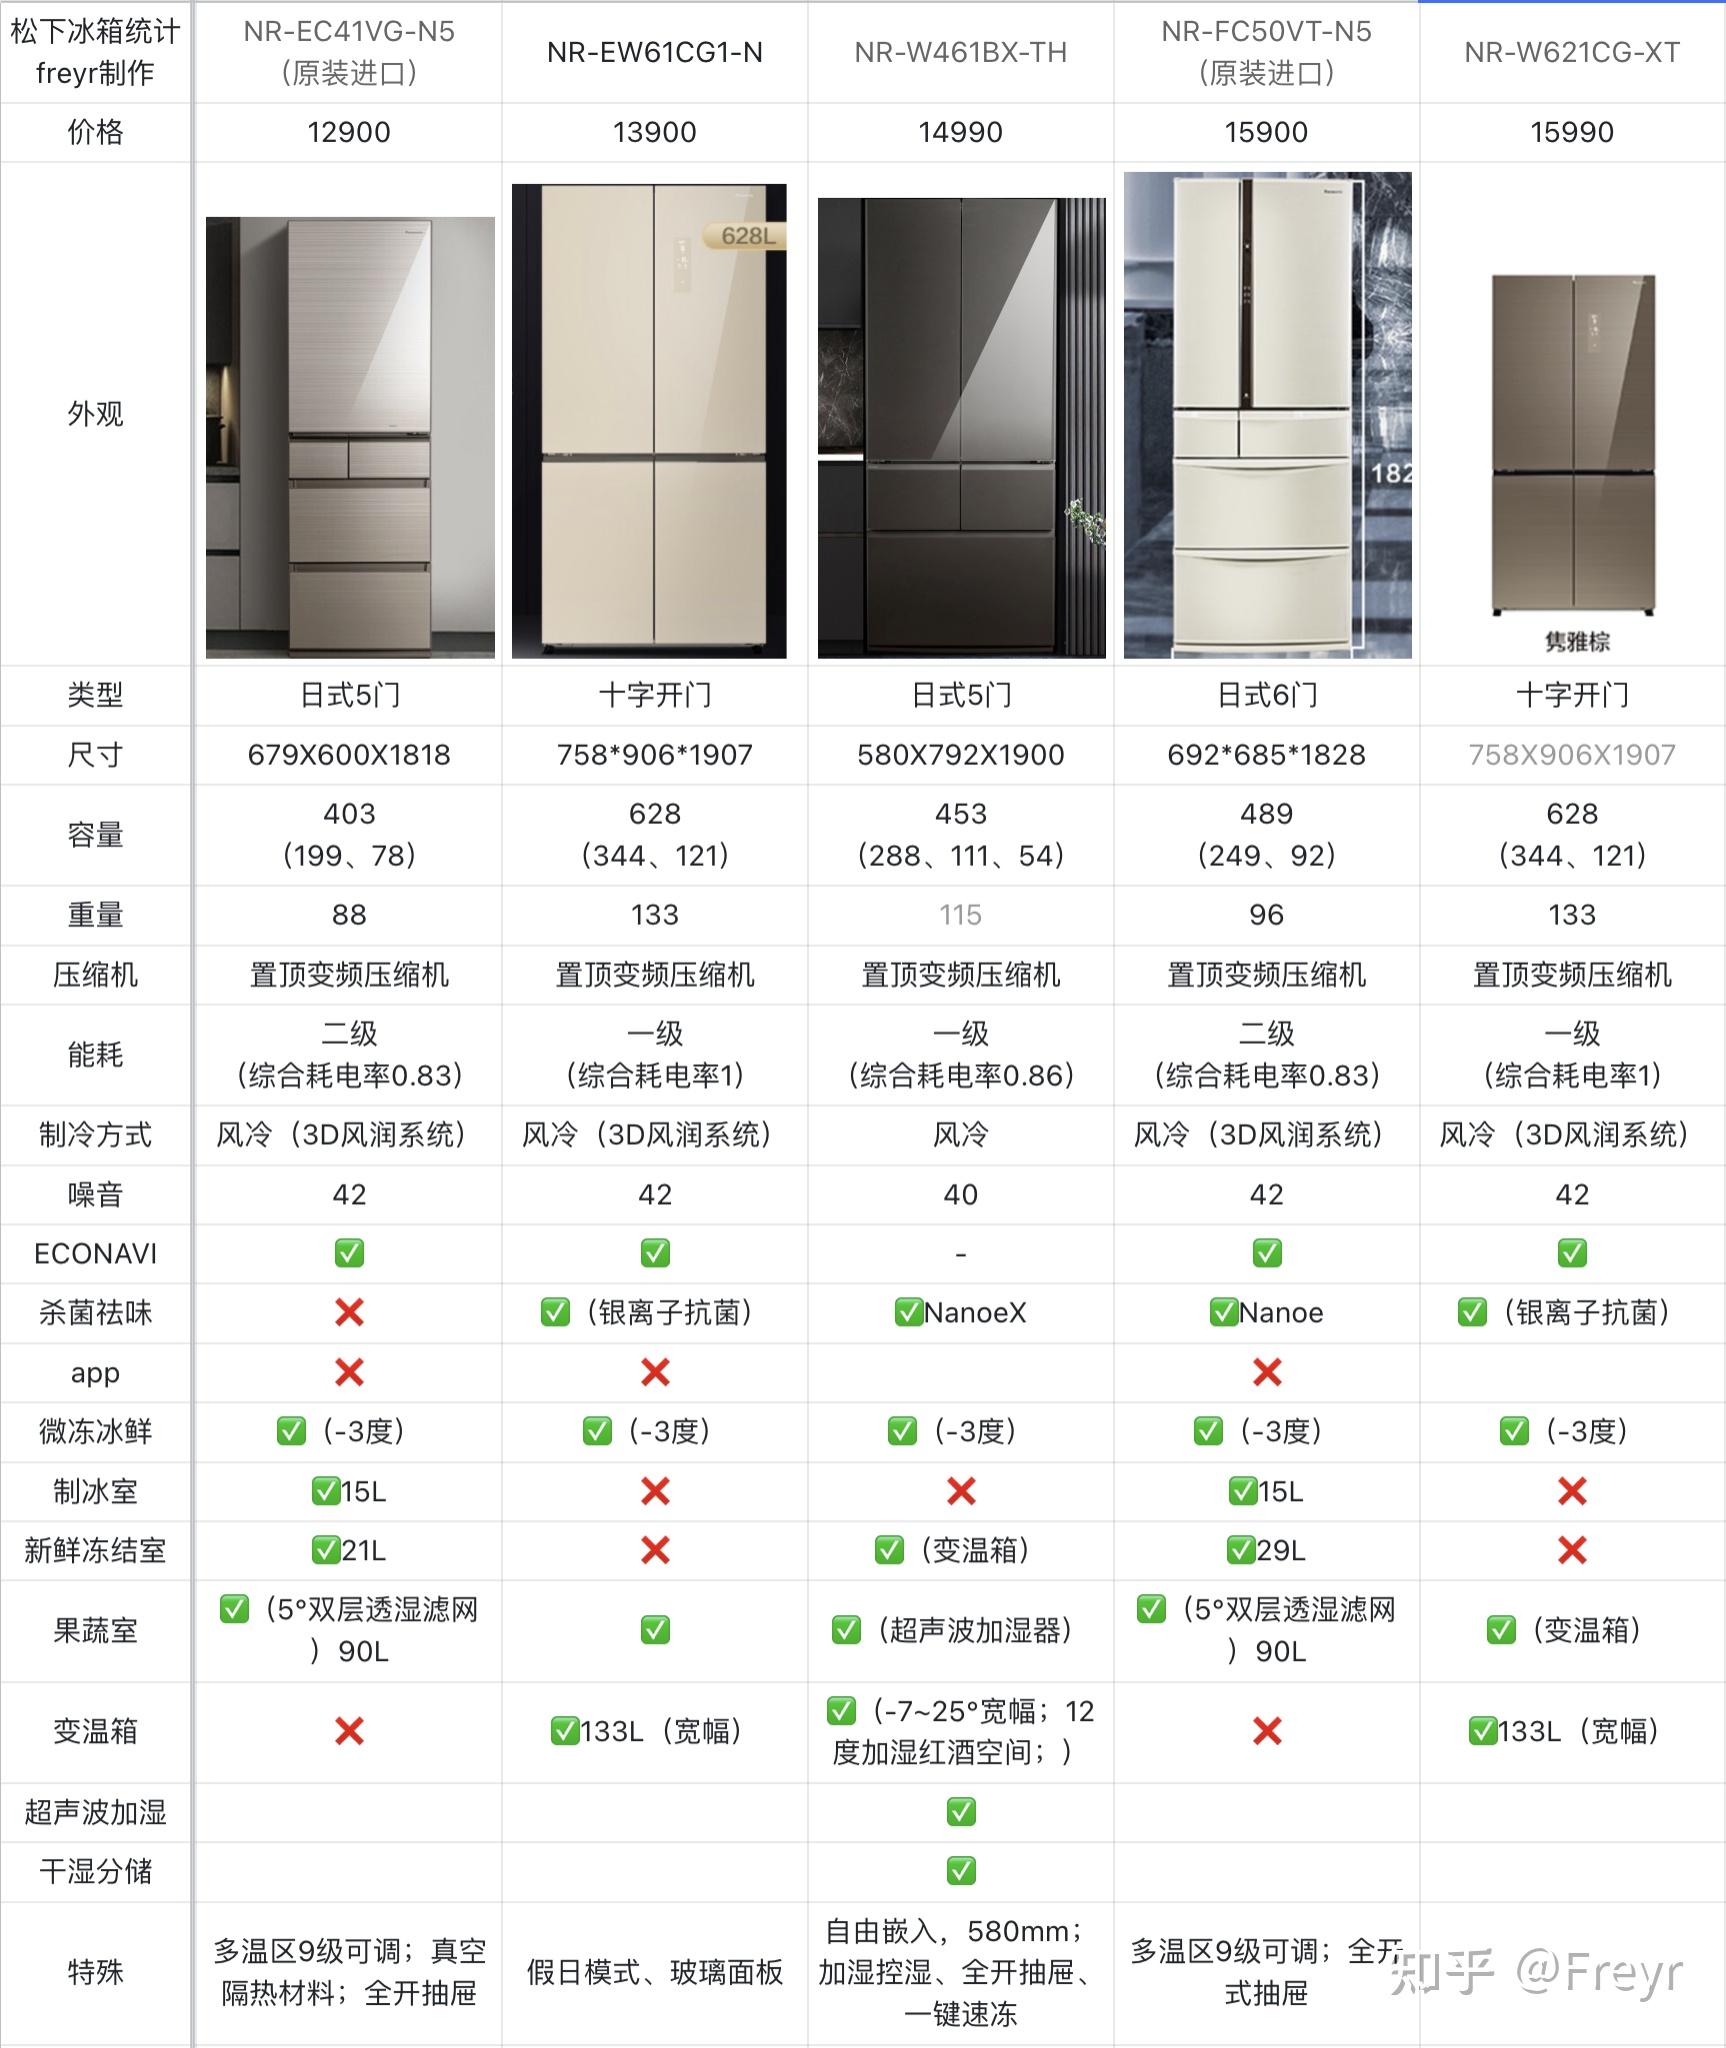 2022日式冰箱品牌推荐,一文搞清松下日式五门冰箱怎么选,35款松下冰箱